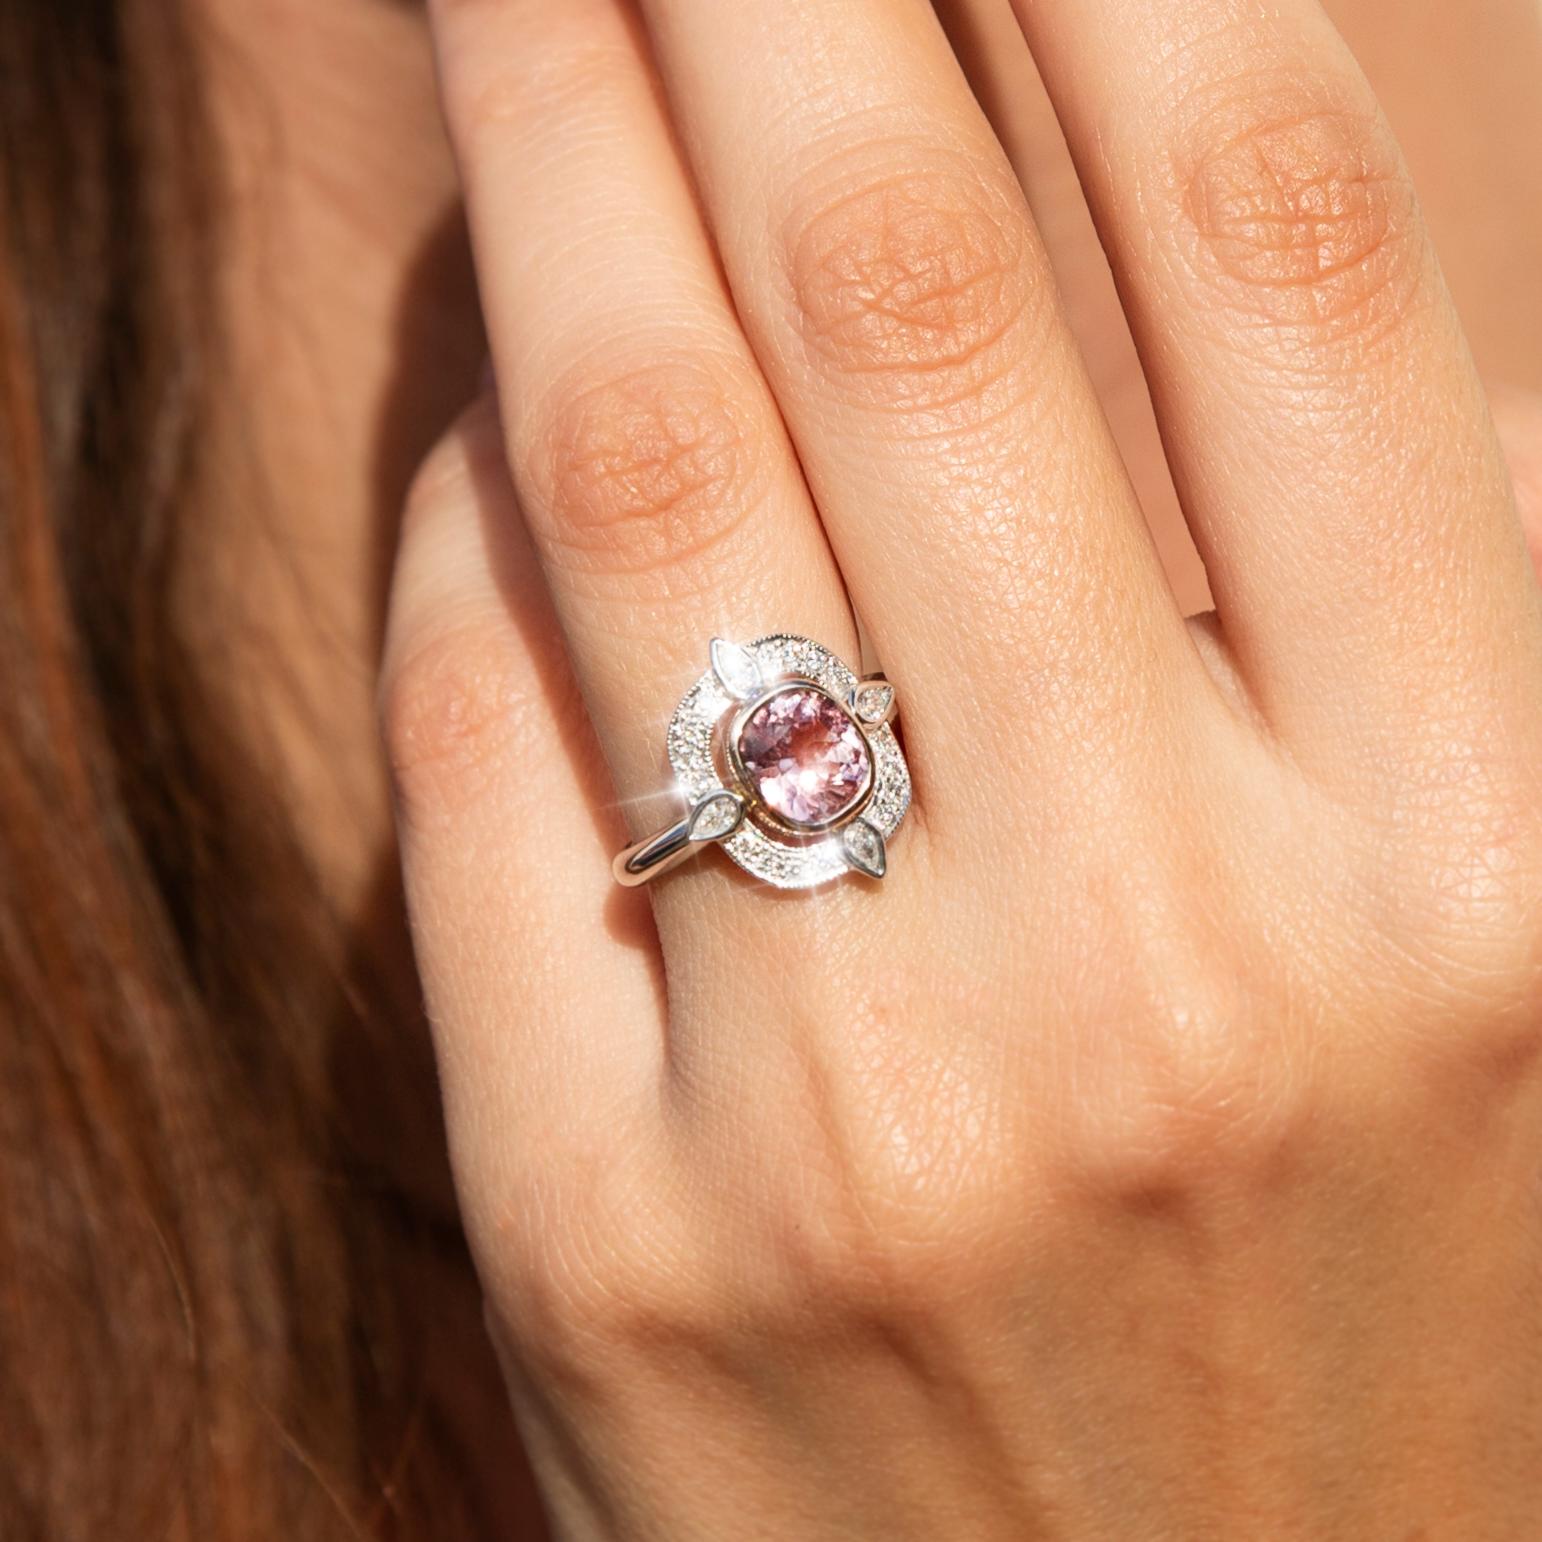 Dieser liebevoll handgefertigte Ring aus schimmerndem 18 Karat Weiß- und Roségold ist ein Meisterwerk des eleganten Designs. Das schimmernde, konisch zulaufende Weißgoldband trägt eine wunderschöne Galerie mit einem bezaubernden rosafarbenen Spinell